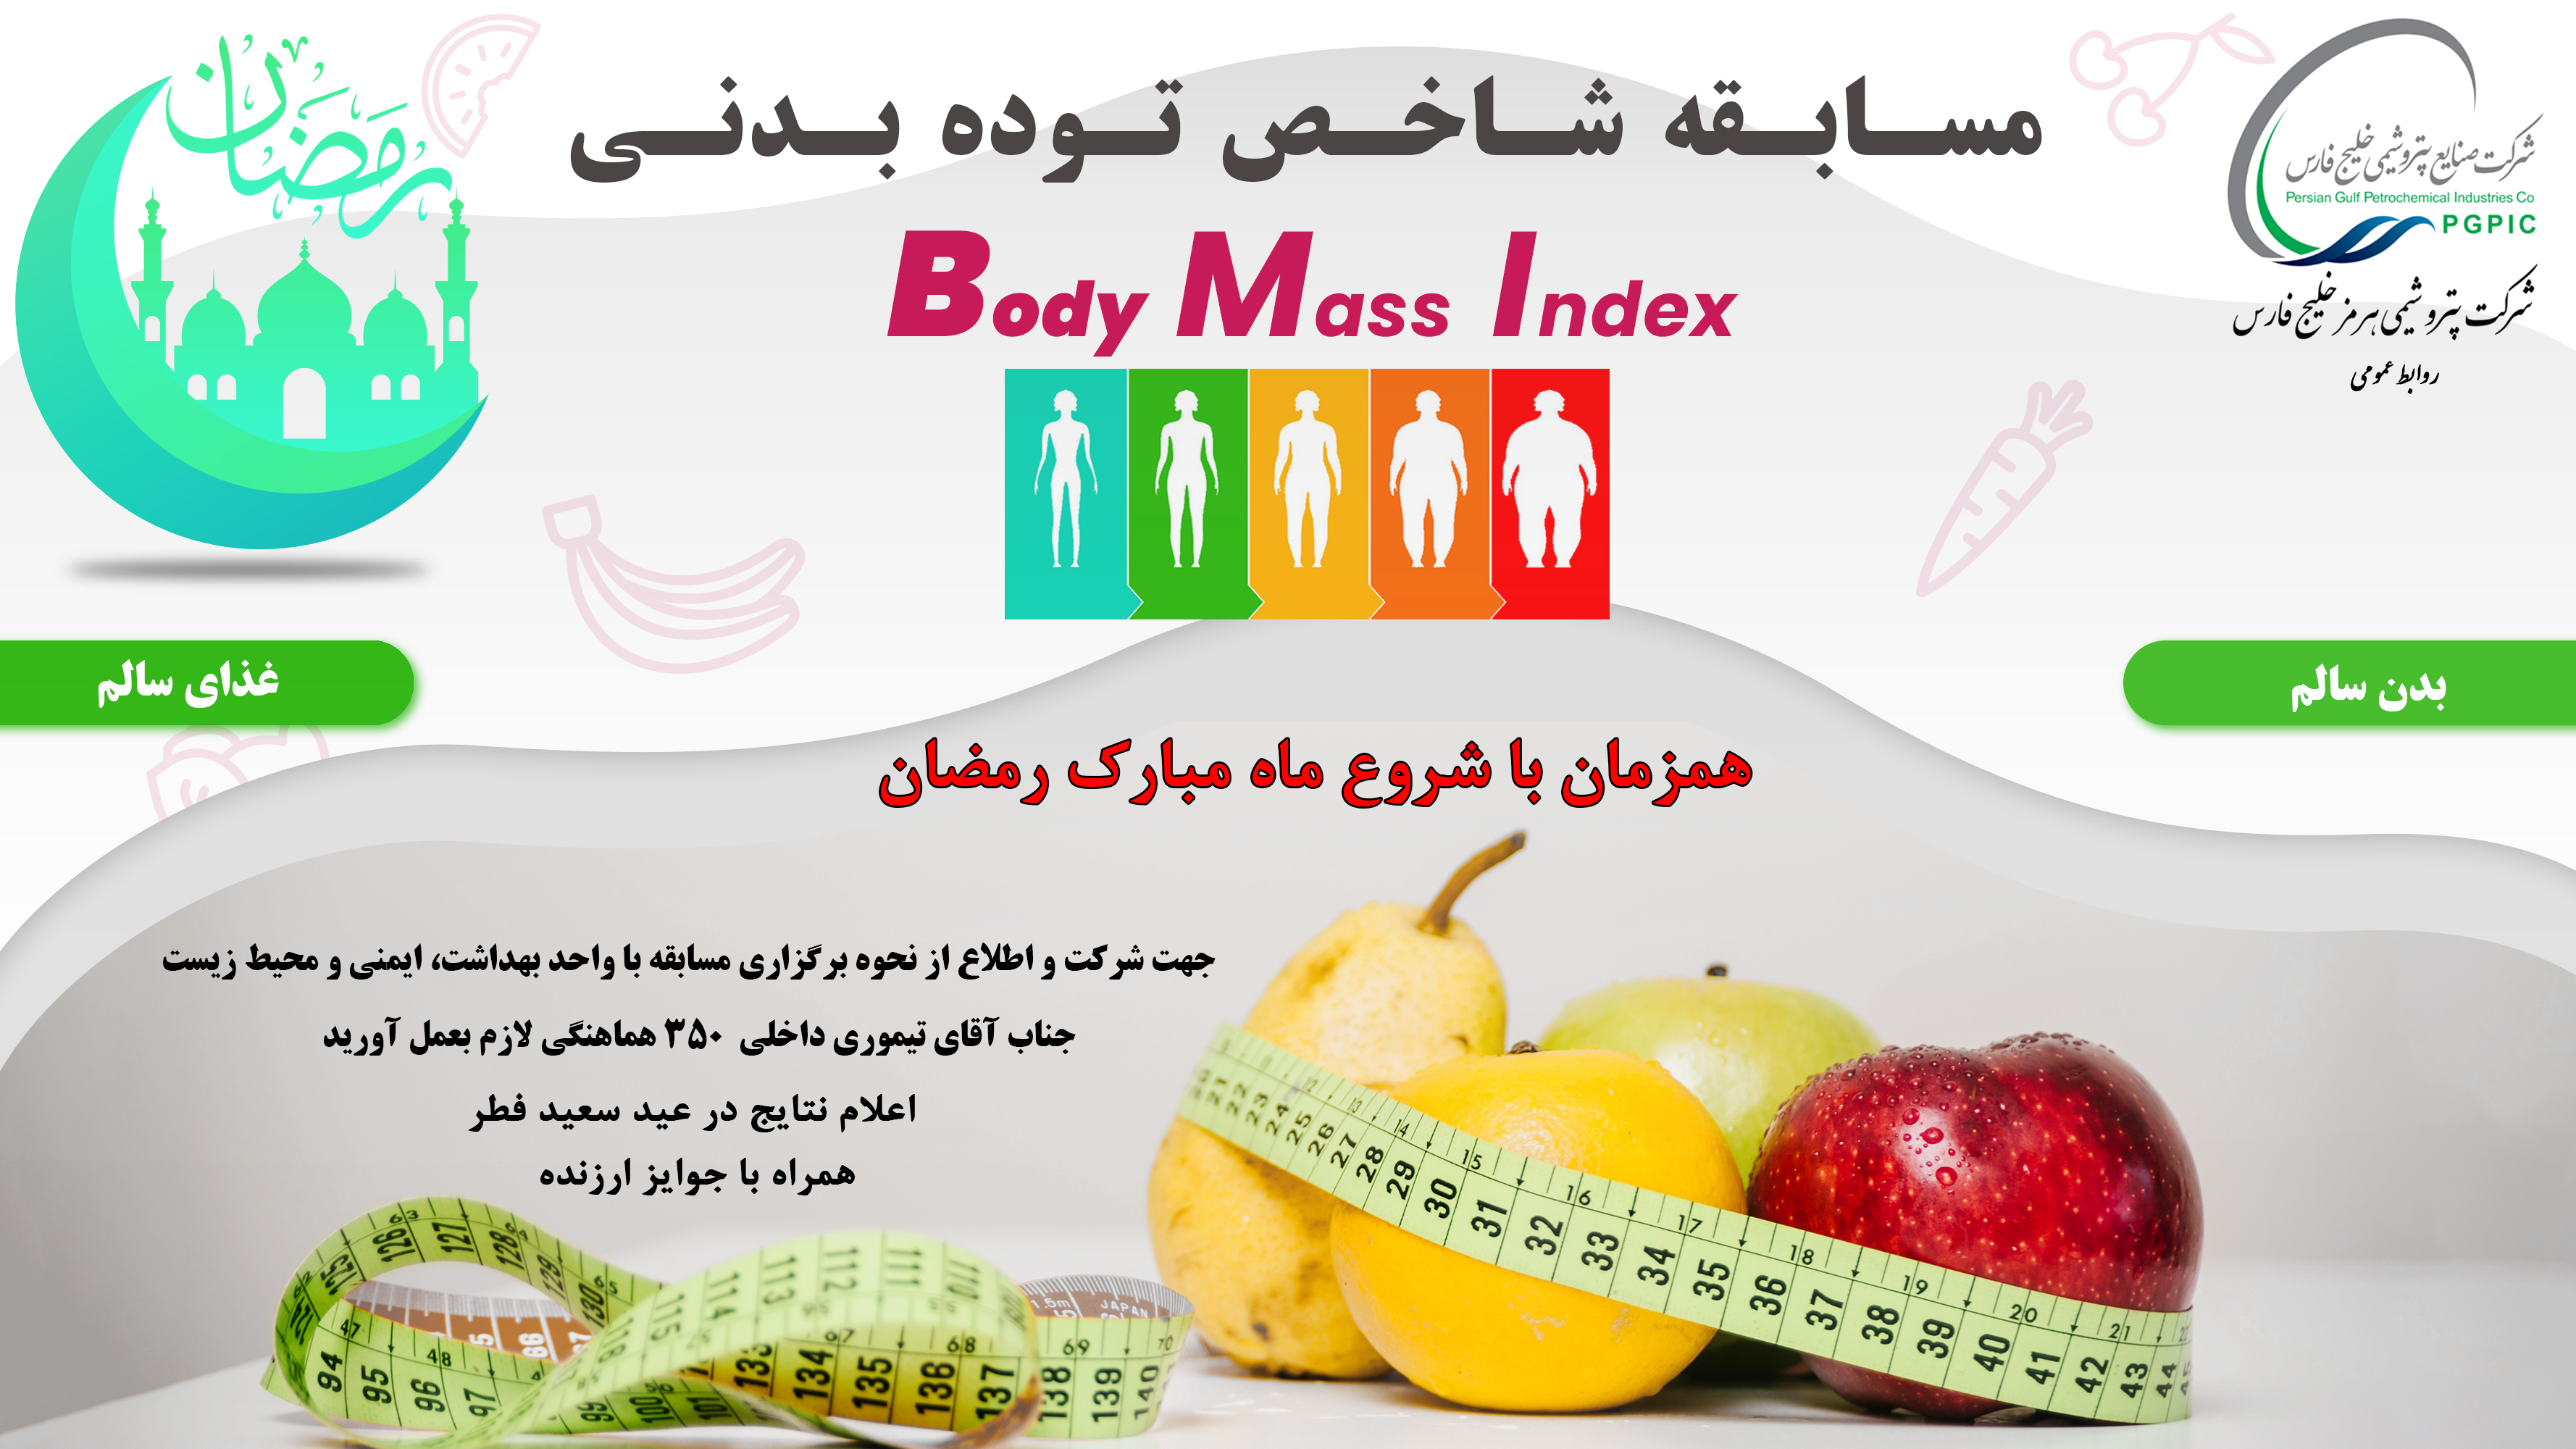 مسابقه شاخص توده بدنی BMI - همزمان با شروع ماه مبارک رمضان ( ویژه کارکنان شرکت پتروشیمی هرمز خلیج فارس )